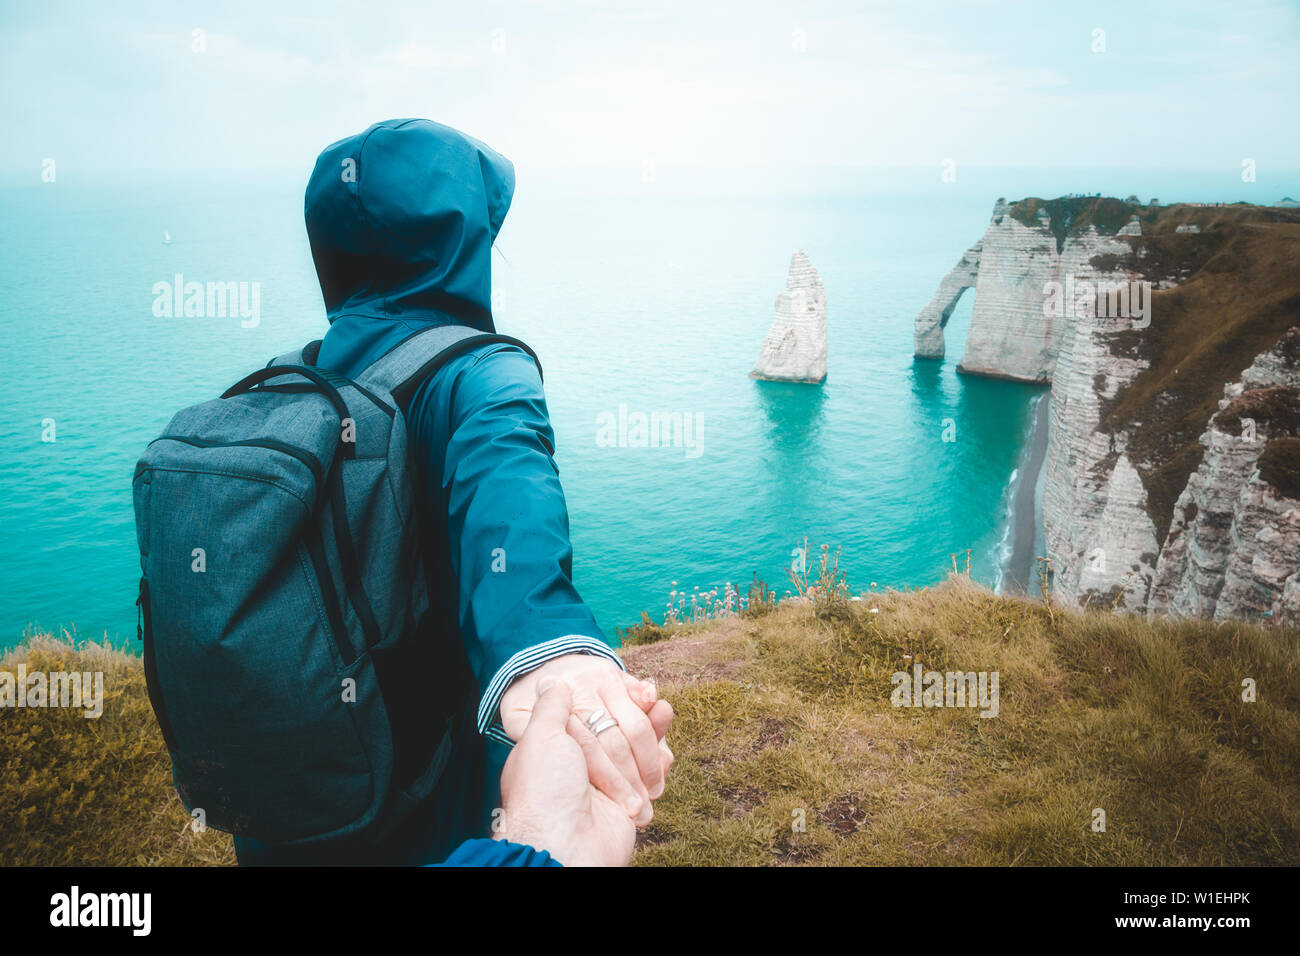 Folgen Sie mir. Junge Frau in Blau Regenjacke die Hand von ihrem Freund zu Fuß bis an den Rand der Klippe, einer malerischen Seenlandschaft zu beobachten, Etretat, Frankreich. Stockfoto